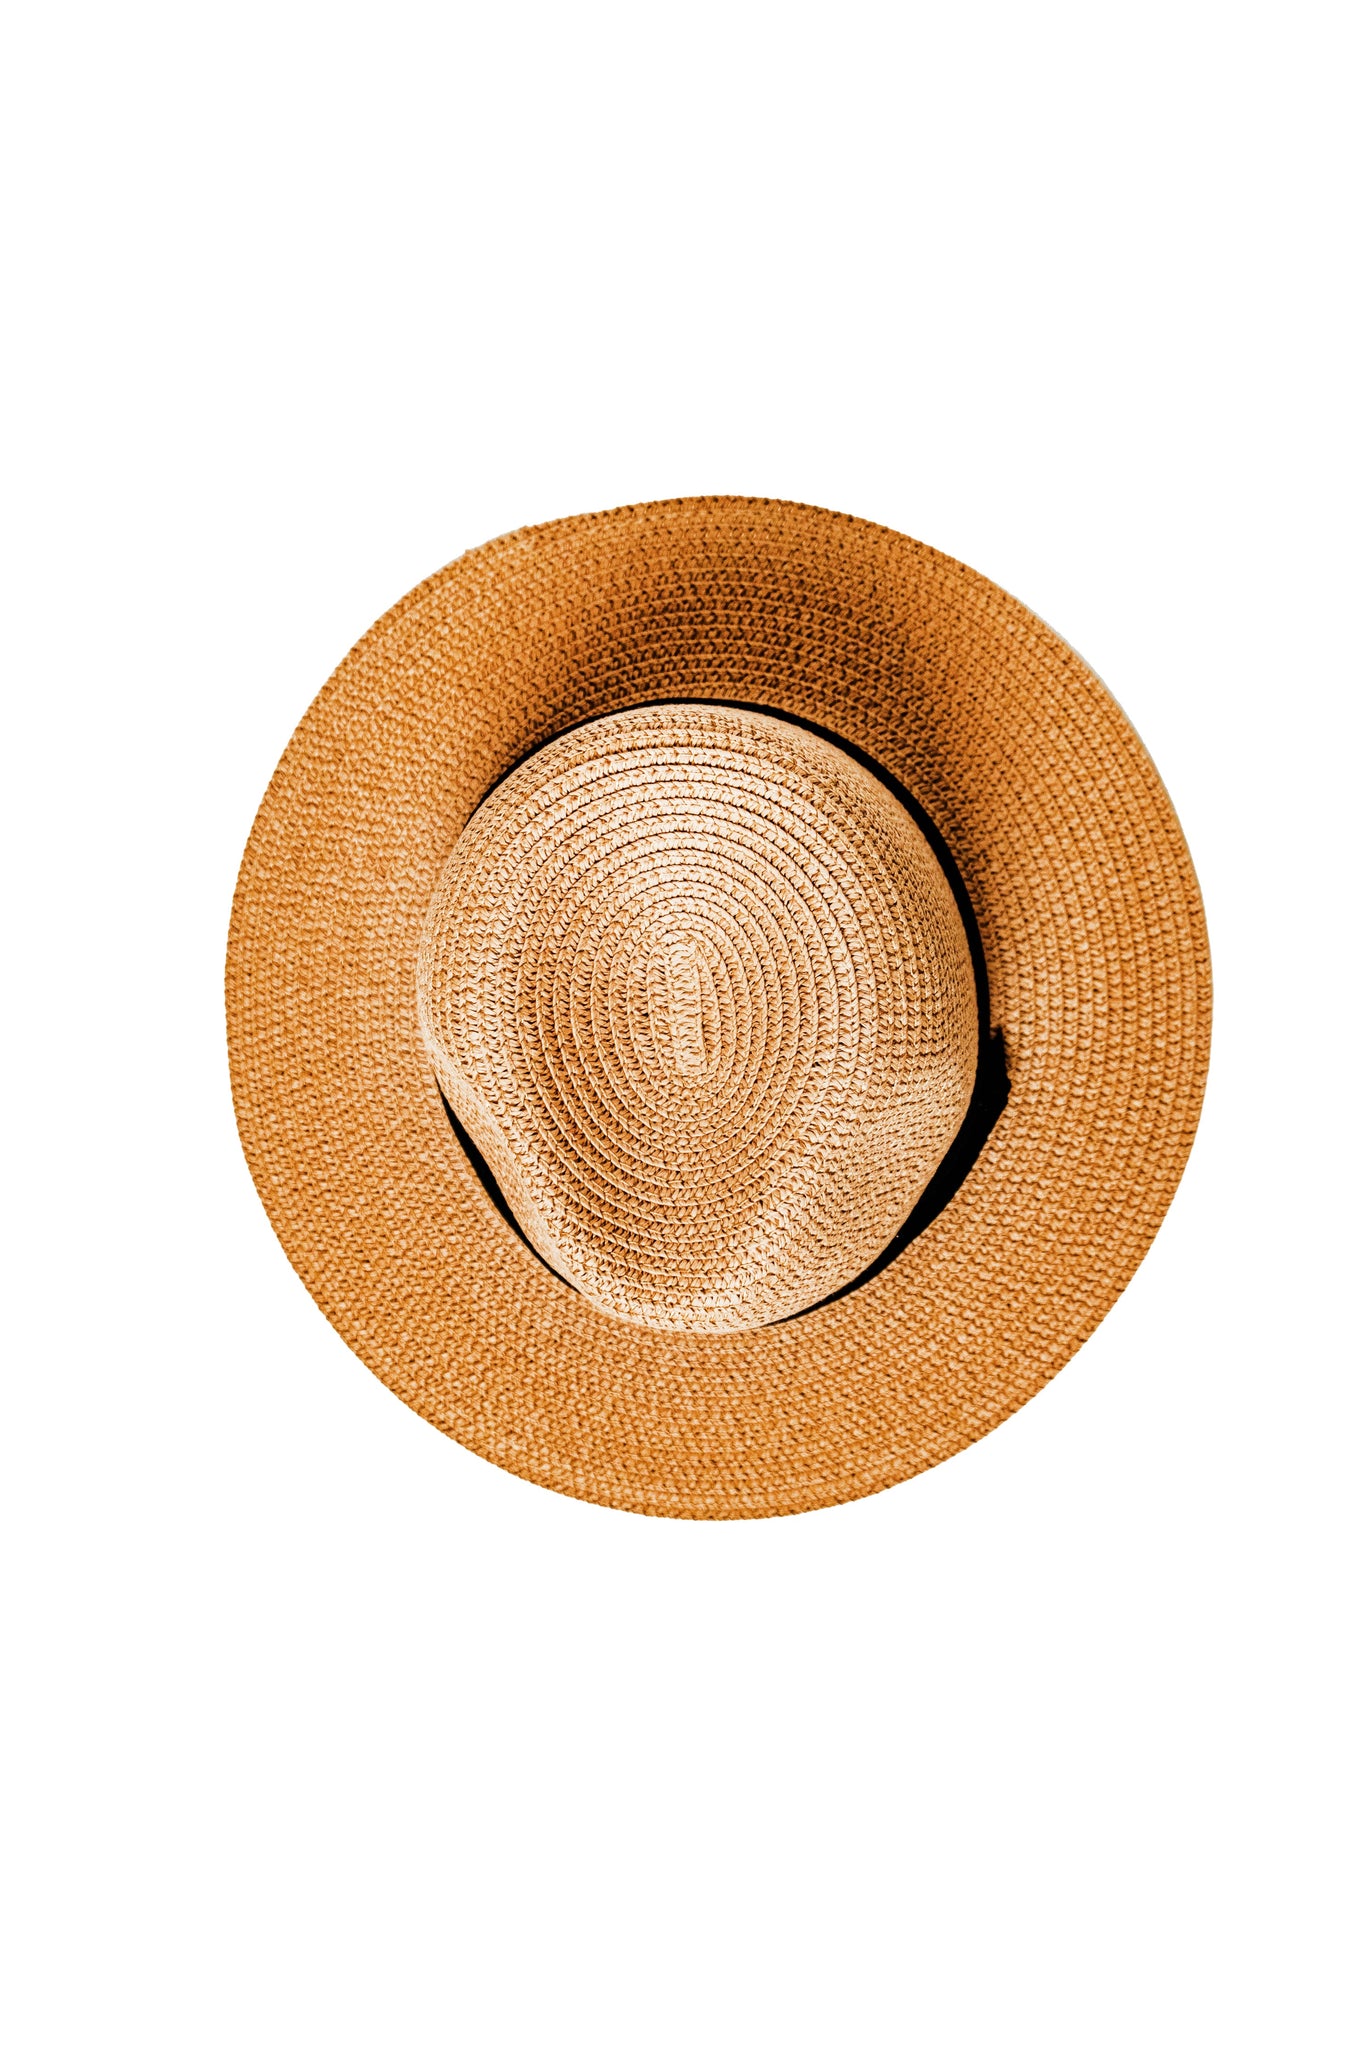 Chokore Summer Straw Hat (Light Brown)